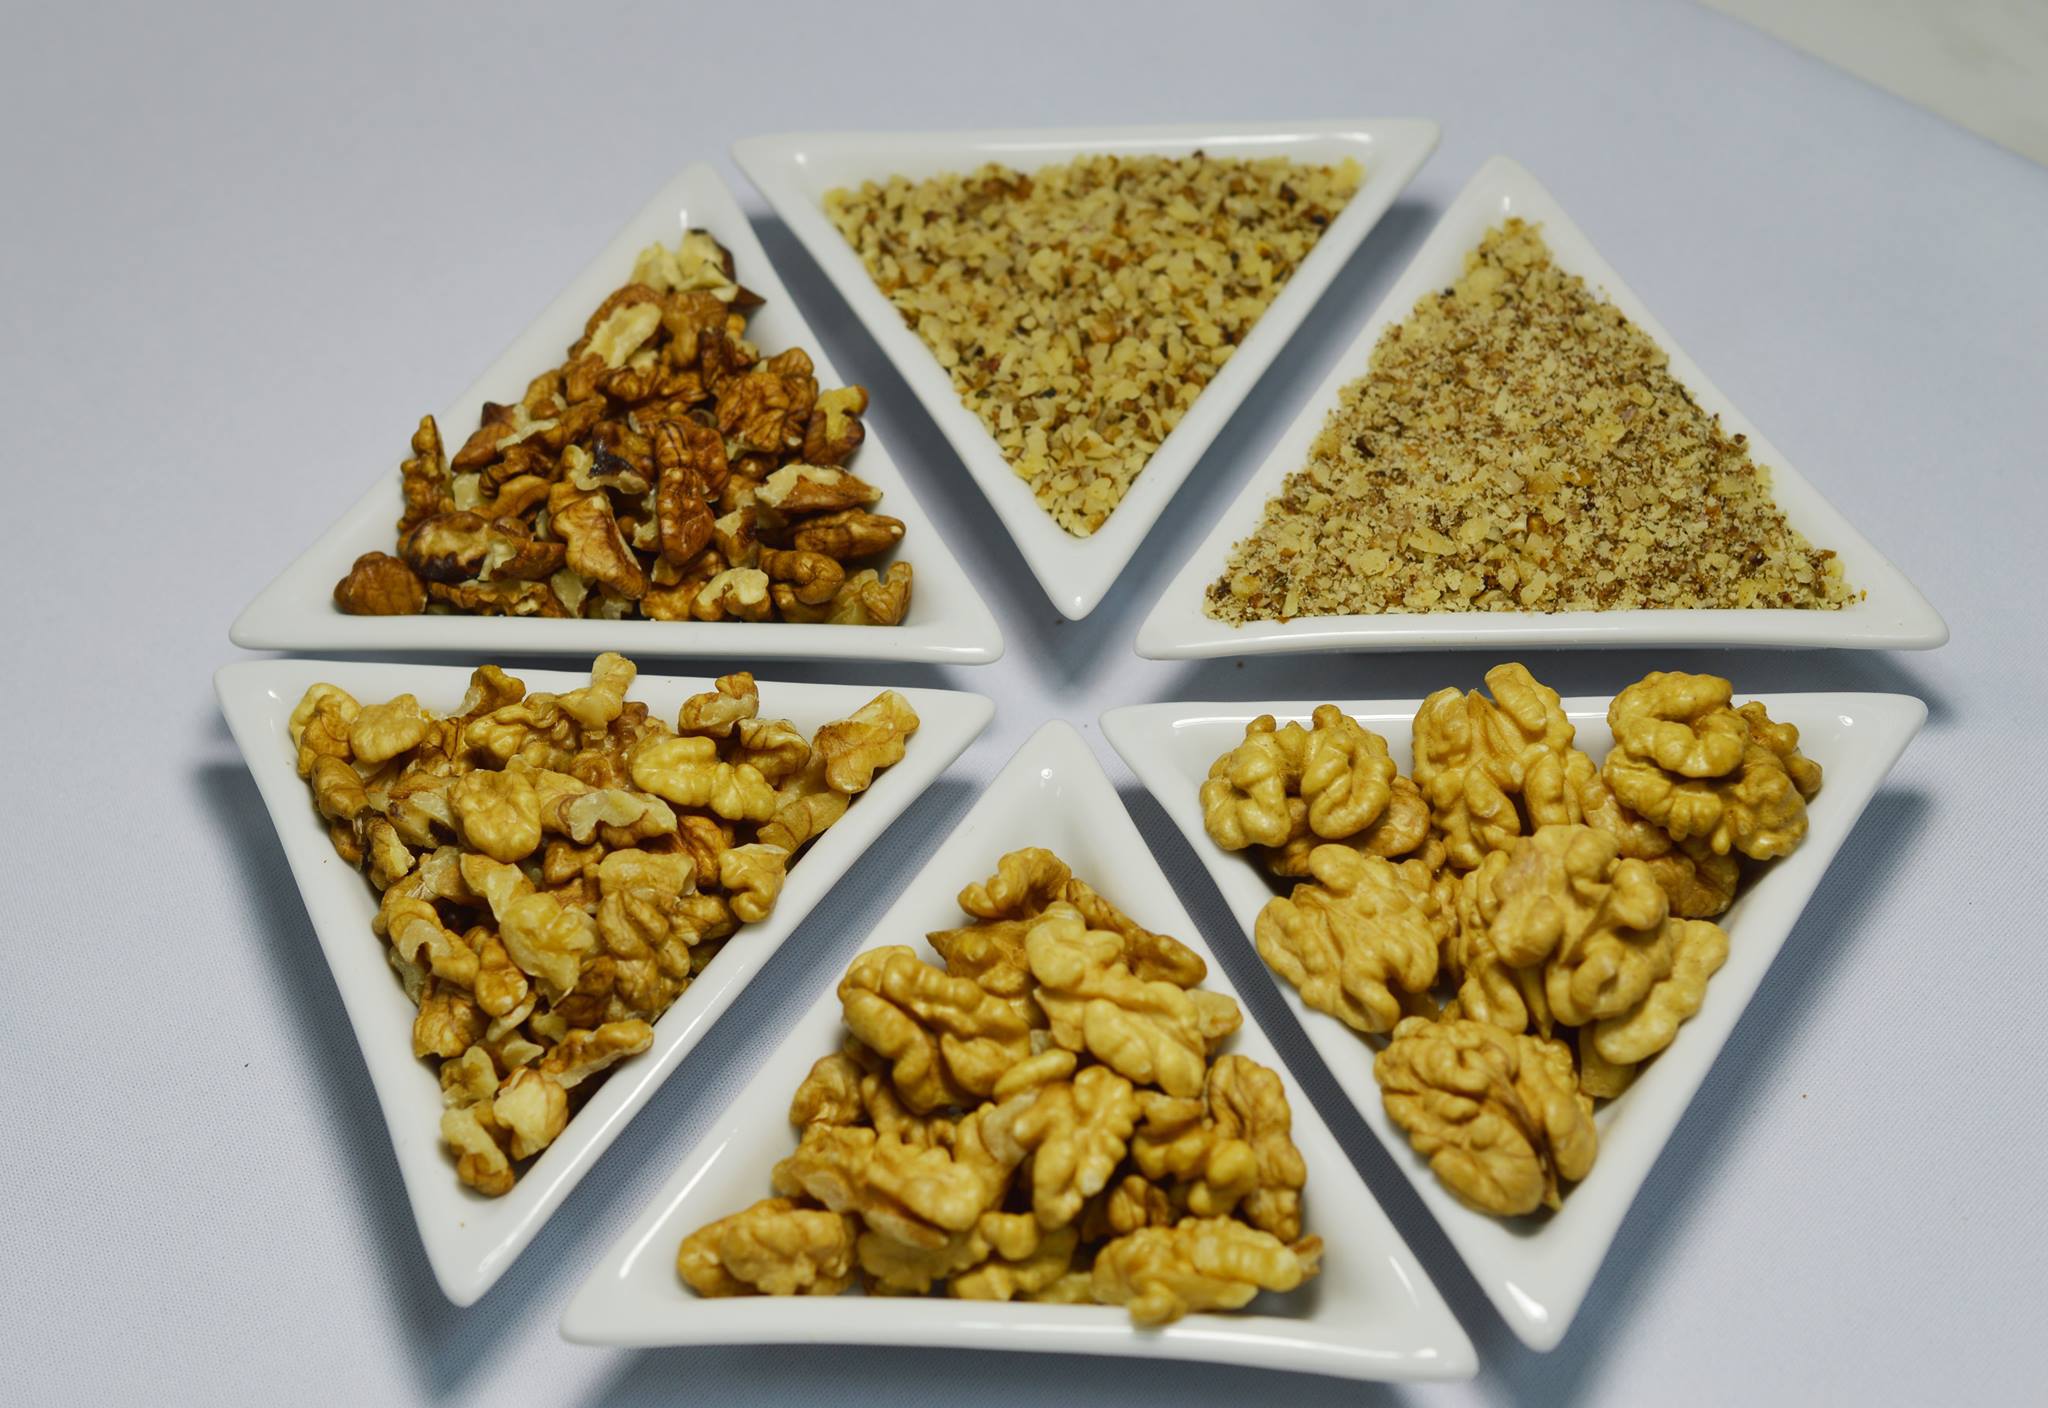 Antreprenori locali. Transilvania Nuts din Alba trimite miez de nucă în peste 23 de pieţe